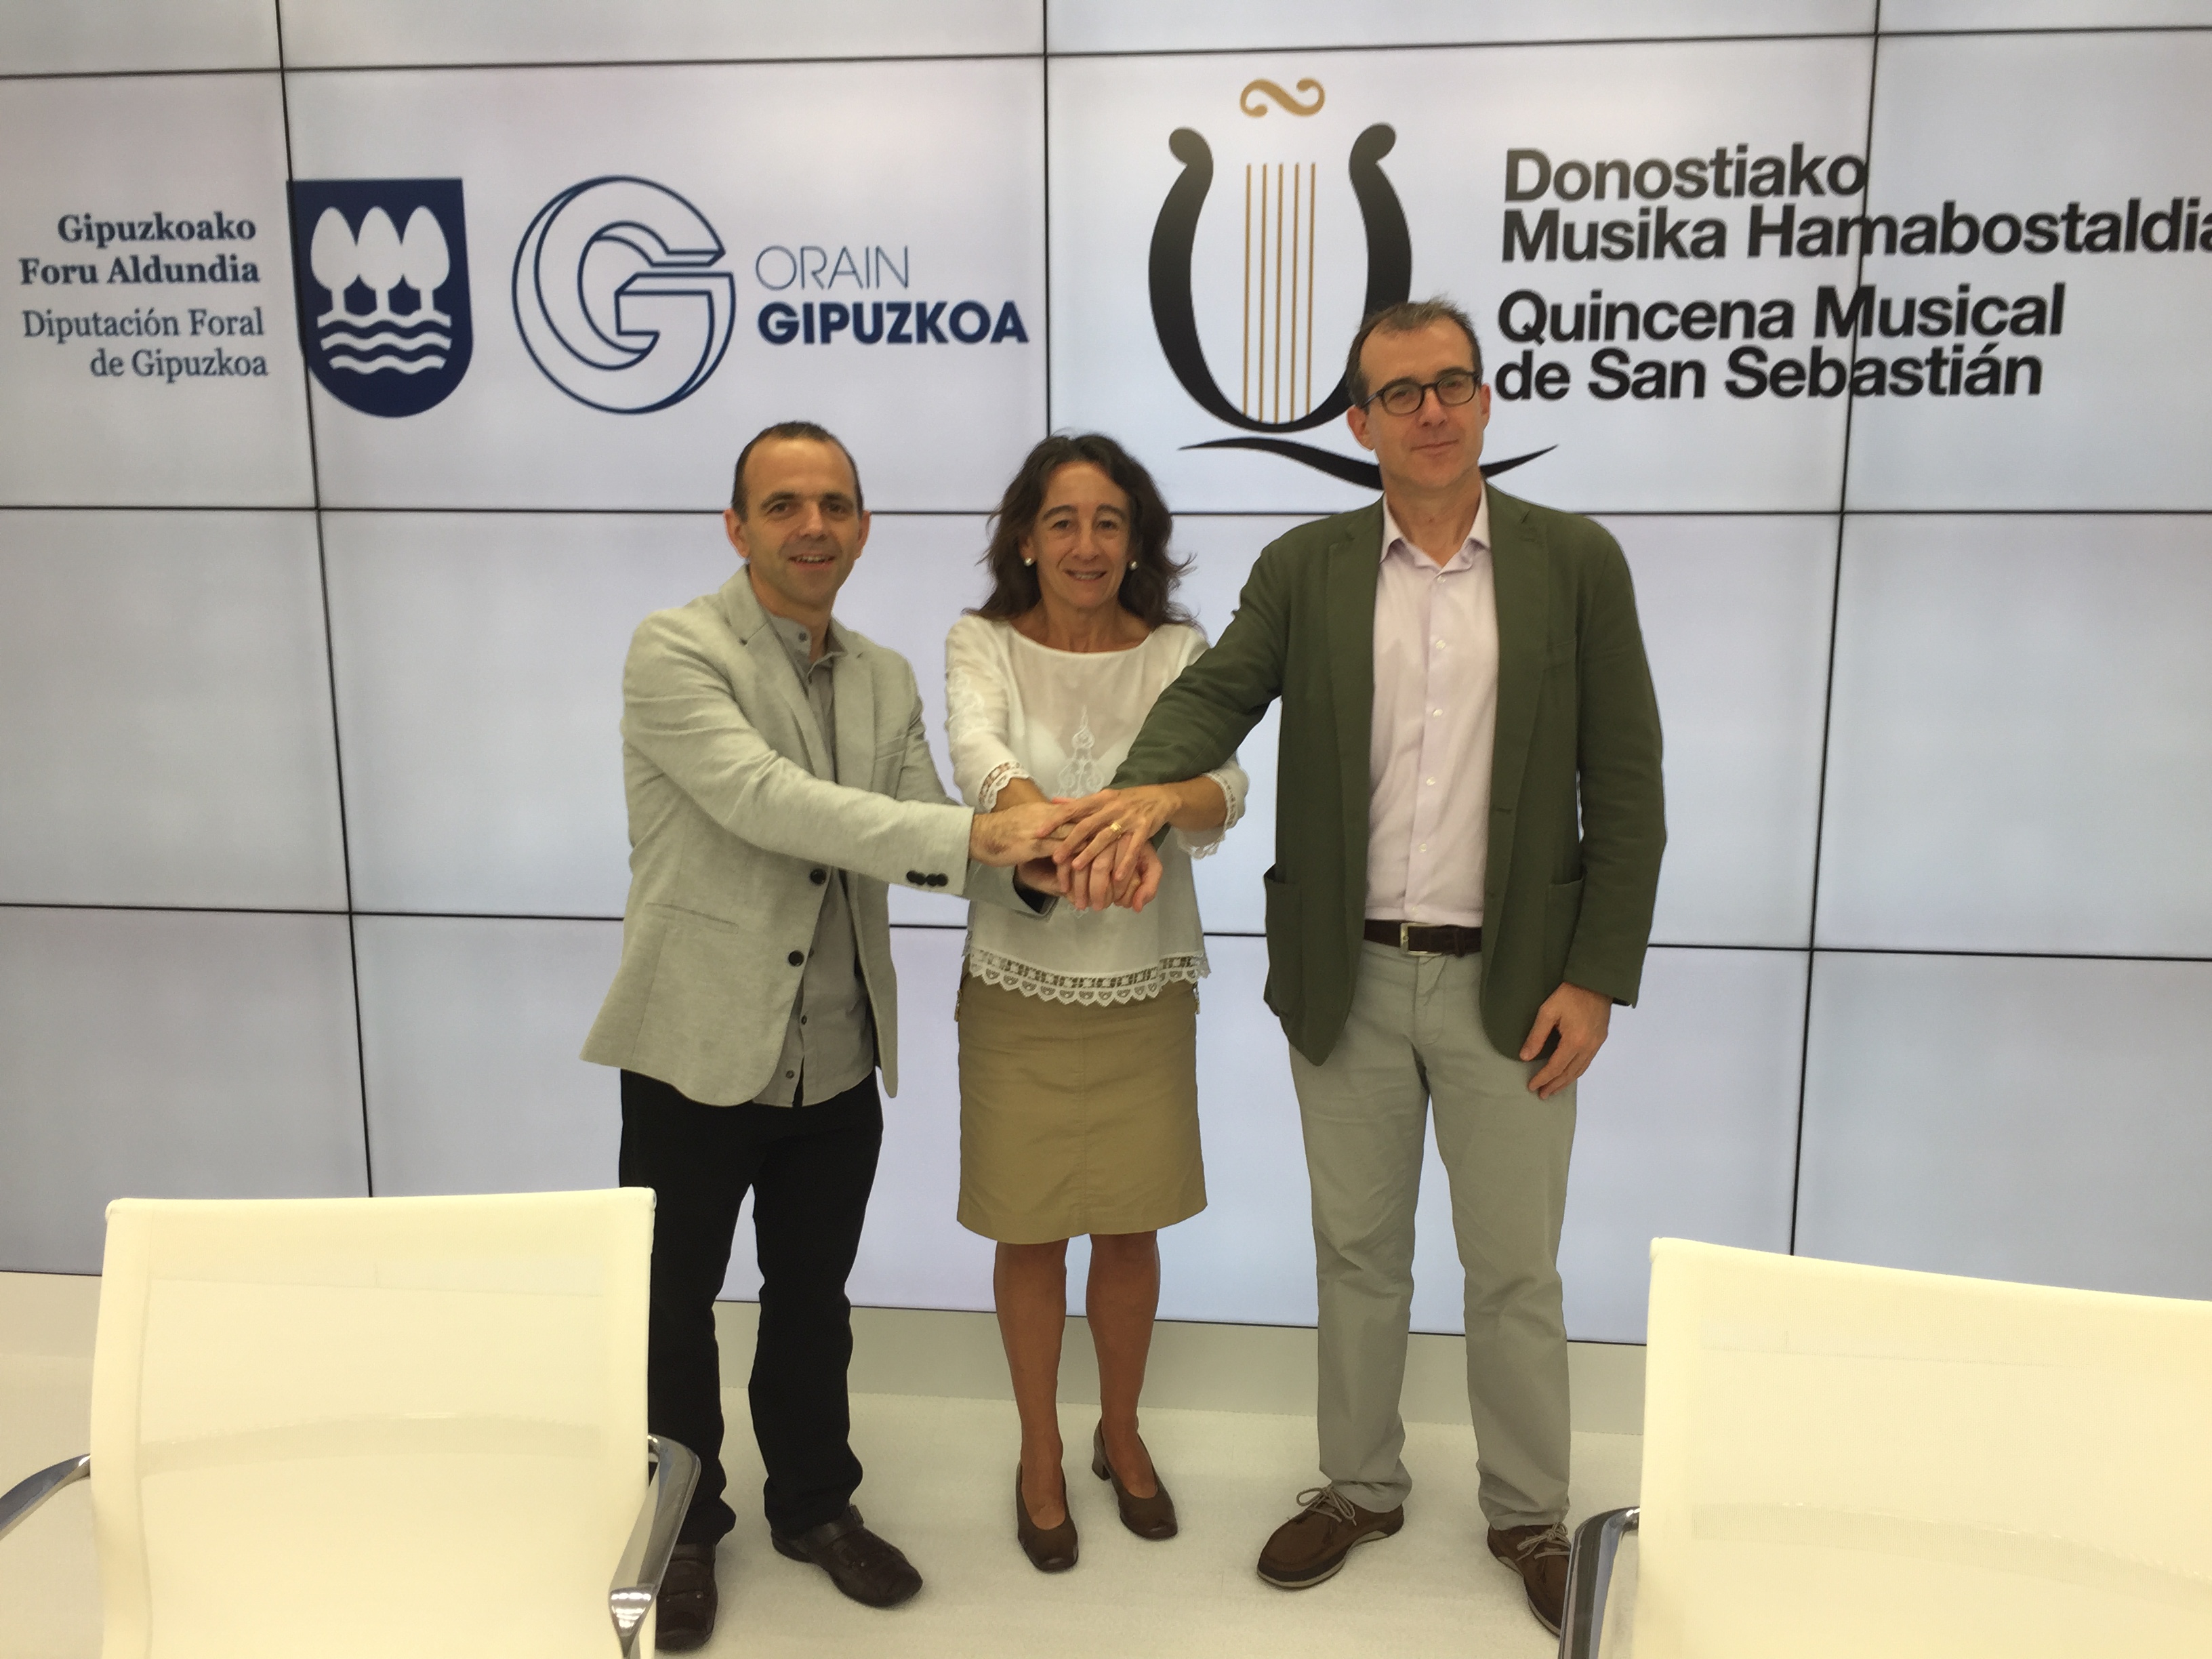 Marisol Garmendia, junto a Patrick Alfaya, presentado el acuerdo entre Lurraldebus y Quincena Musical